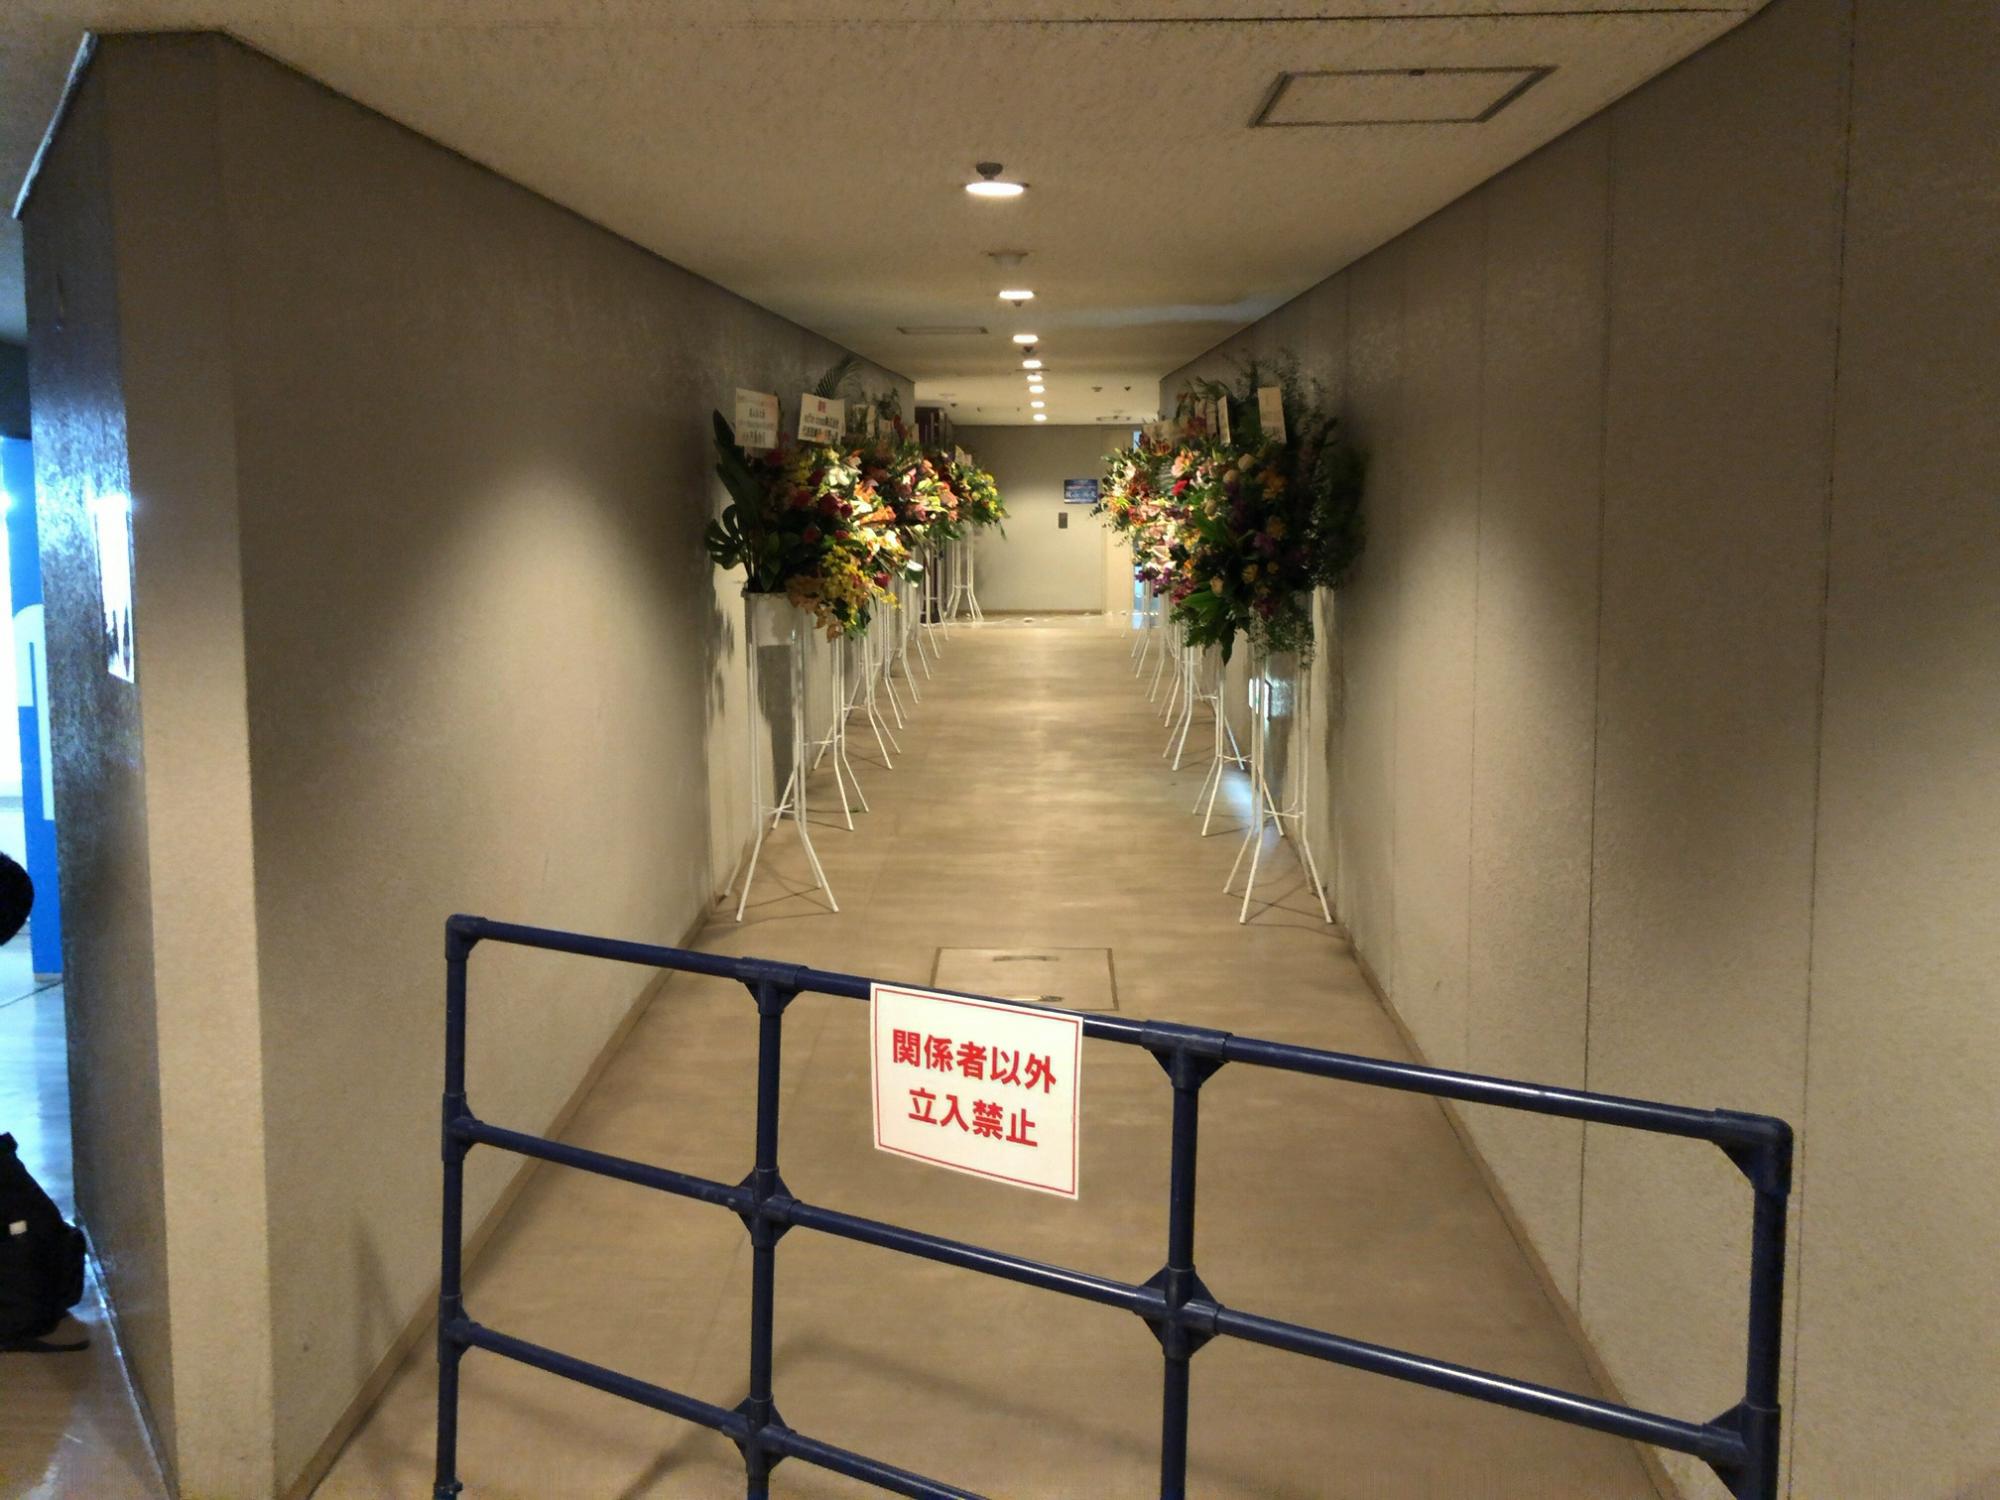 通路の左右にスタンド花が間隔をあけて奥まで並び、手前の柵に「関係者以外立入禁止」の札がついている写真